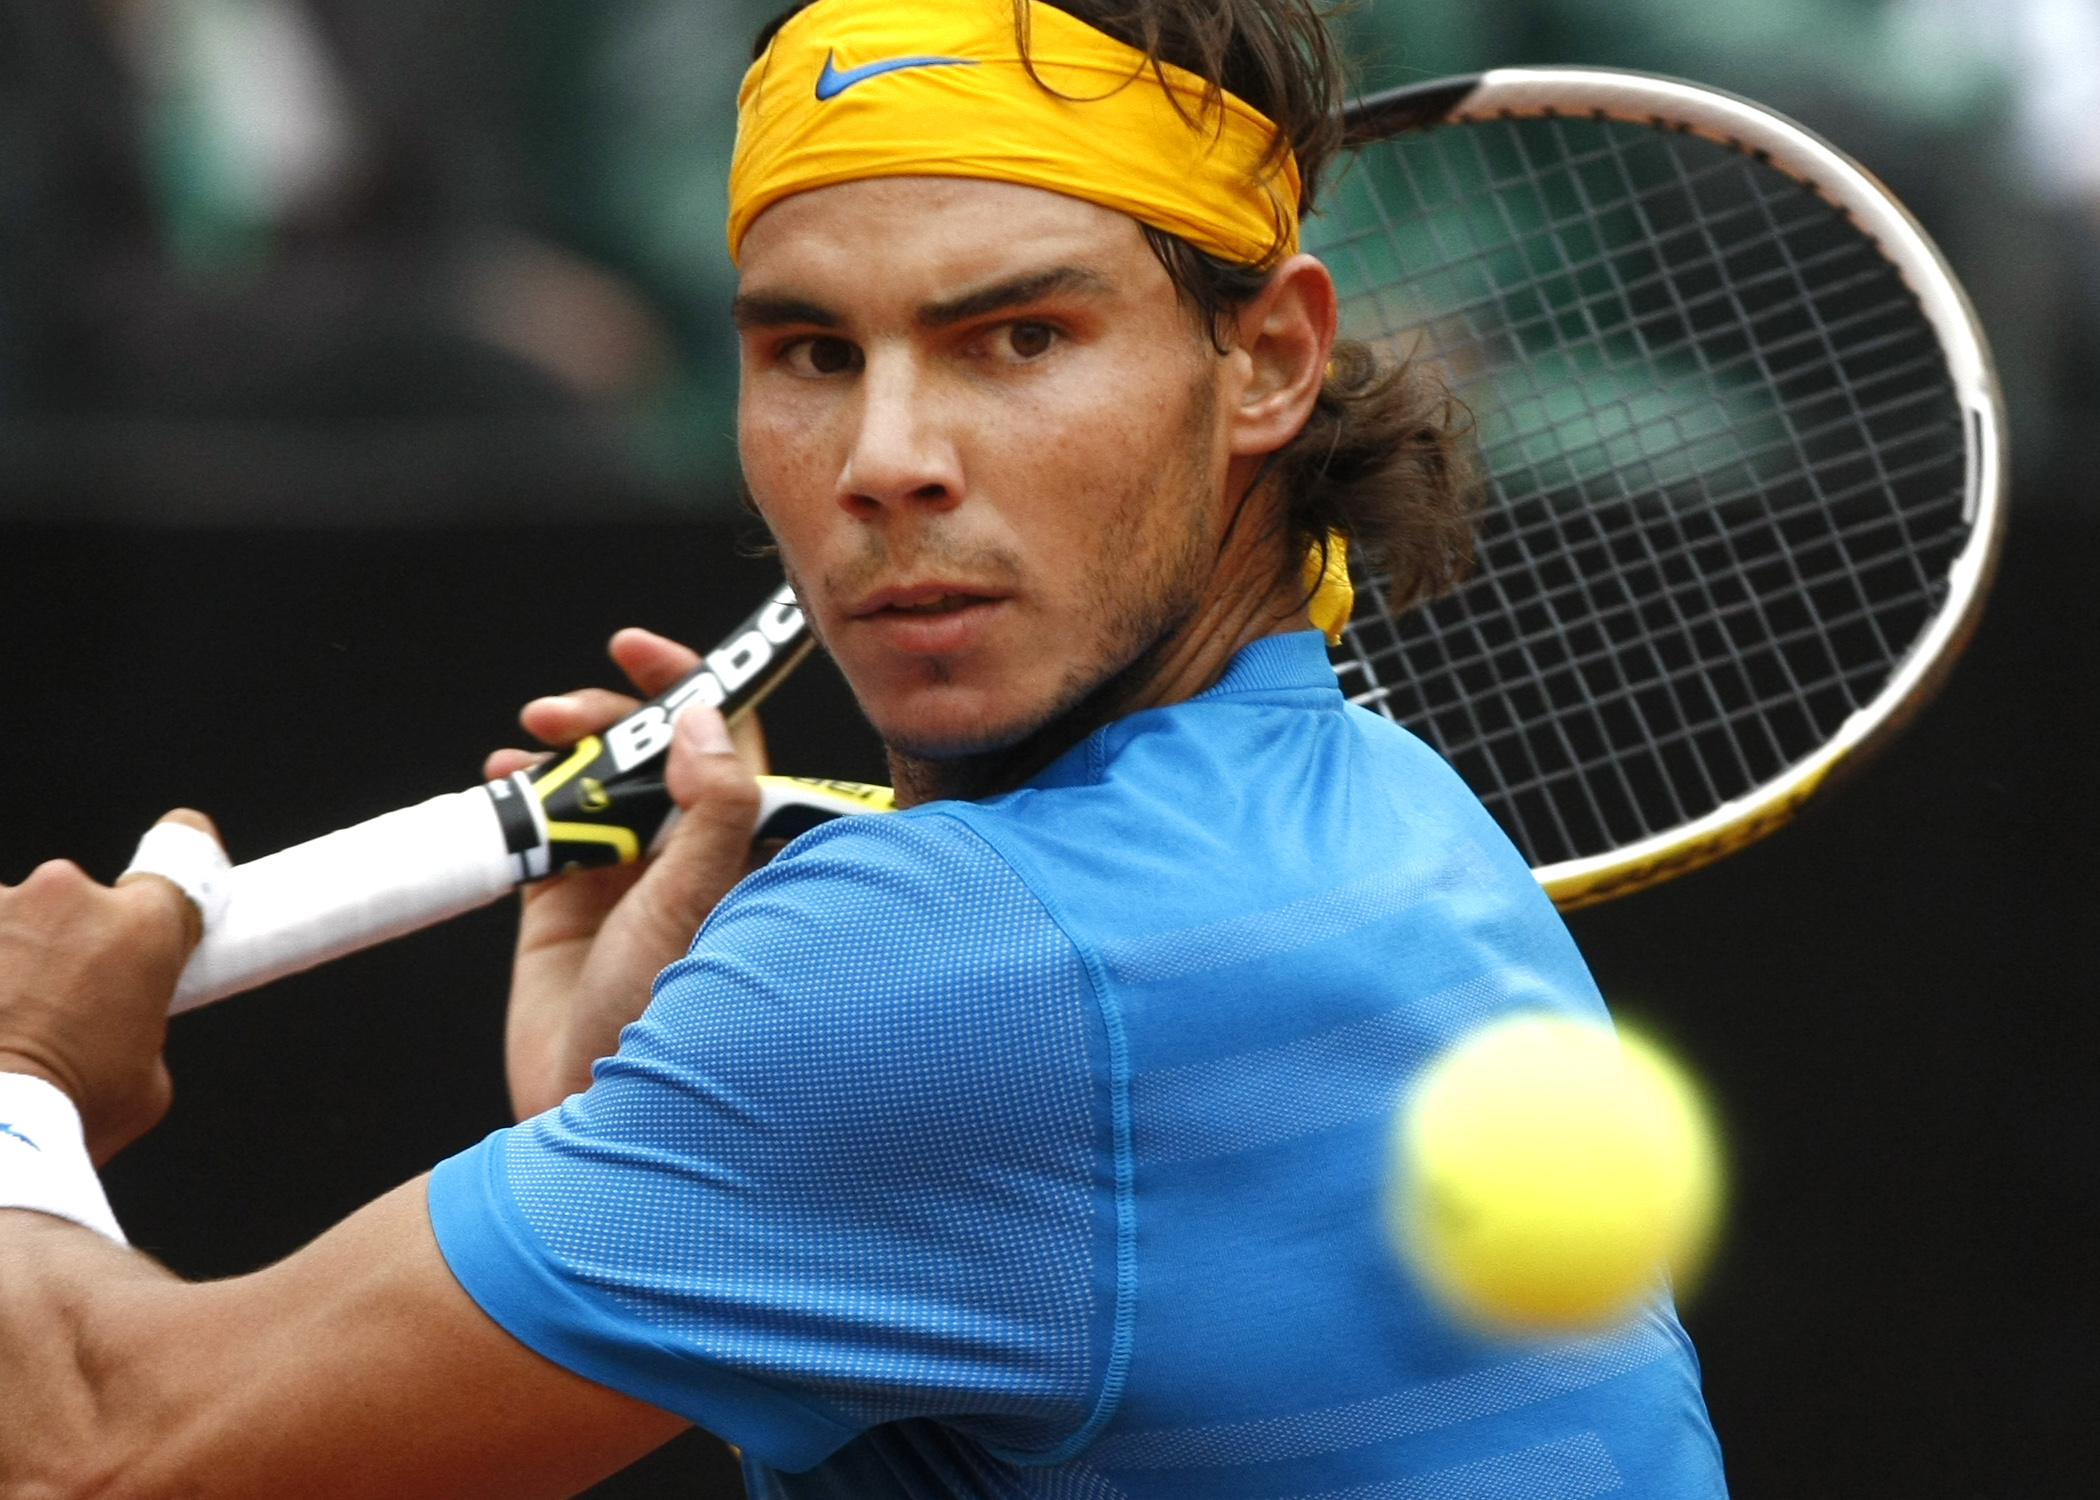 Tennis, Rafael Nadal, ATP, David Ferrer